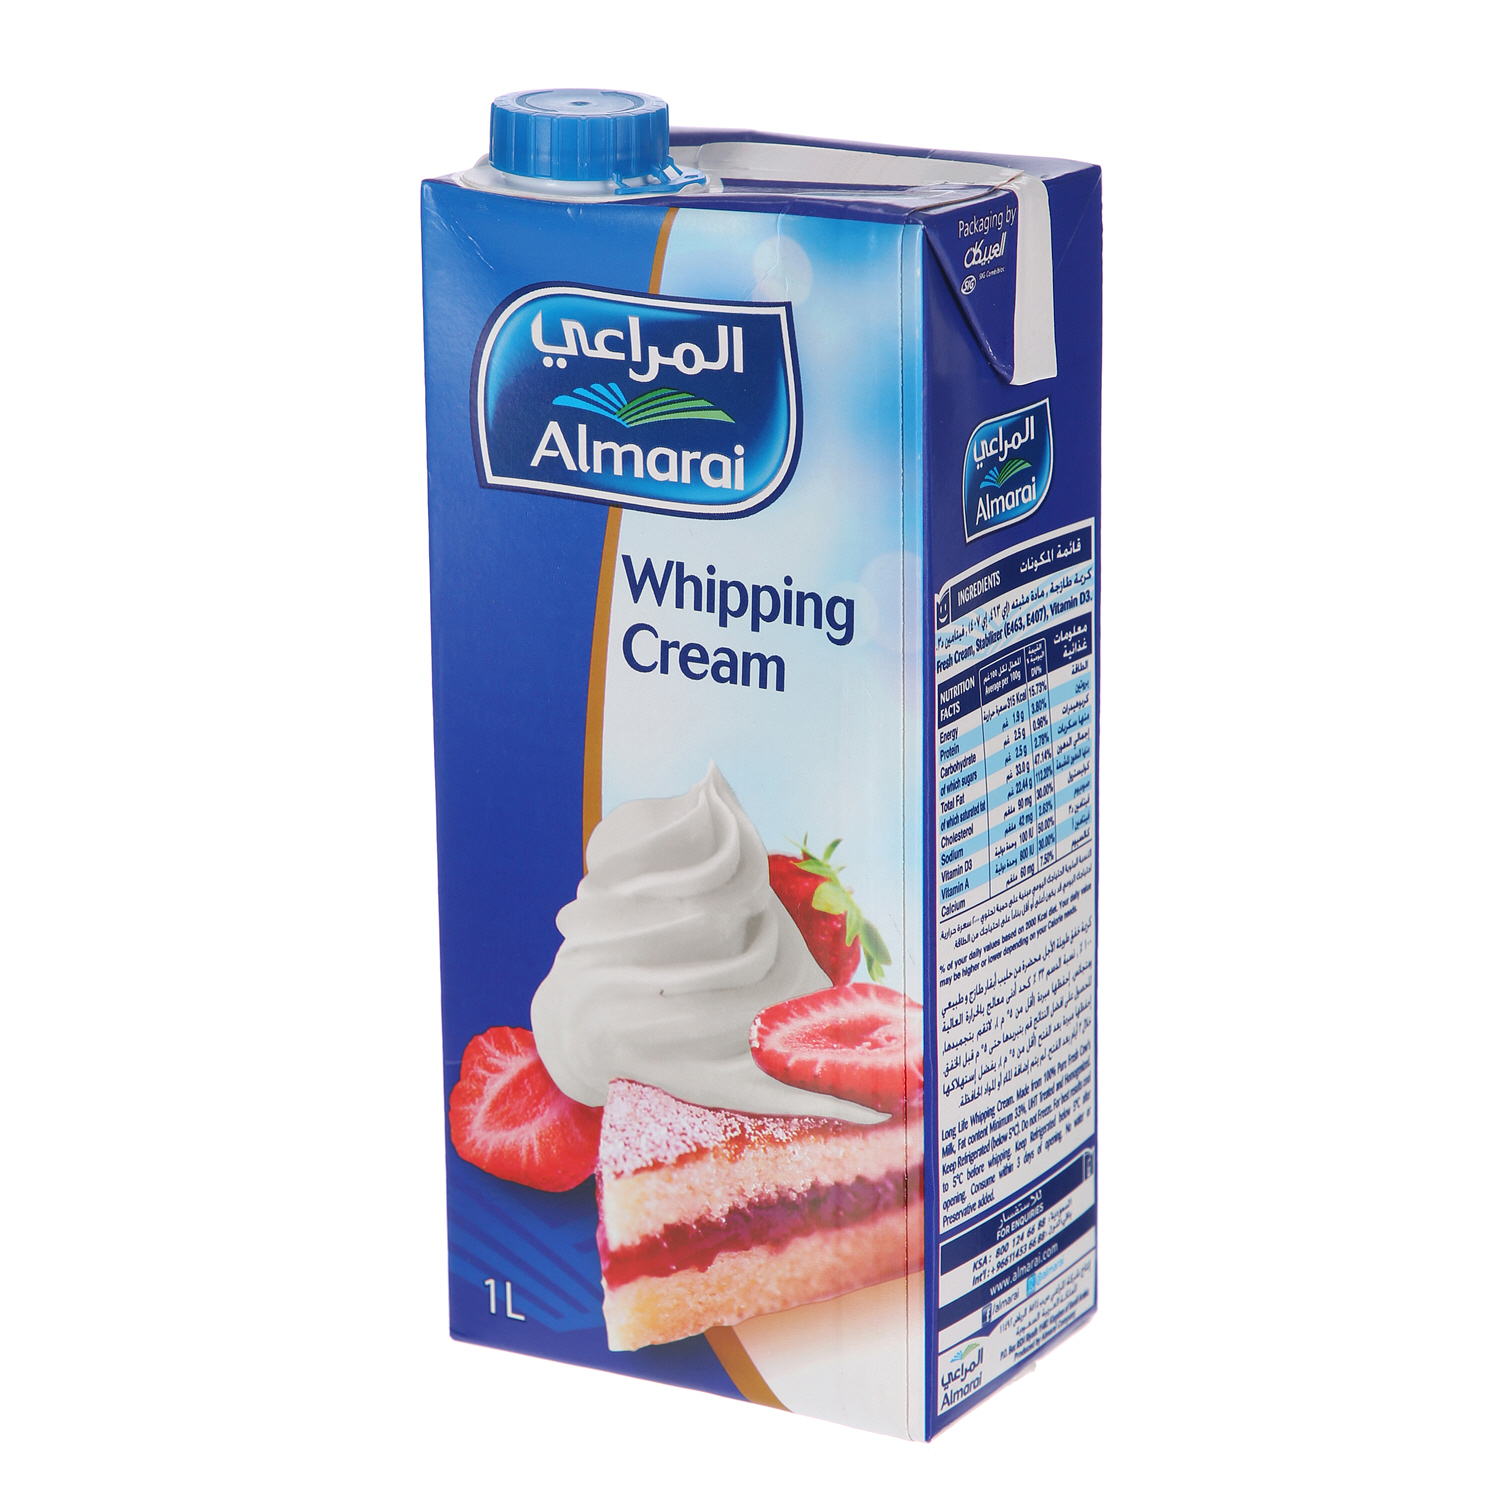 Al Marai Whipping Cream Screwcap Full Fat 1 L